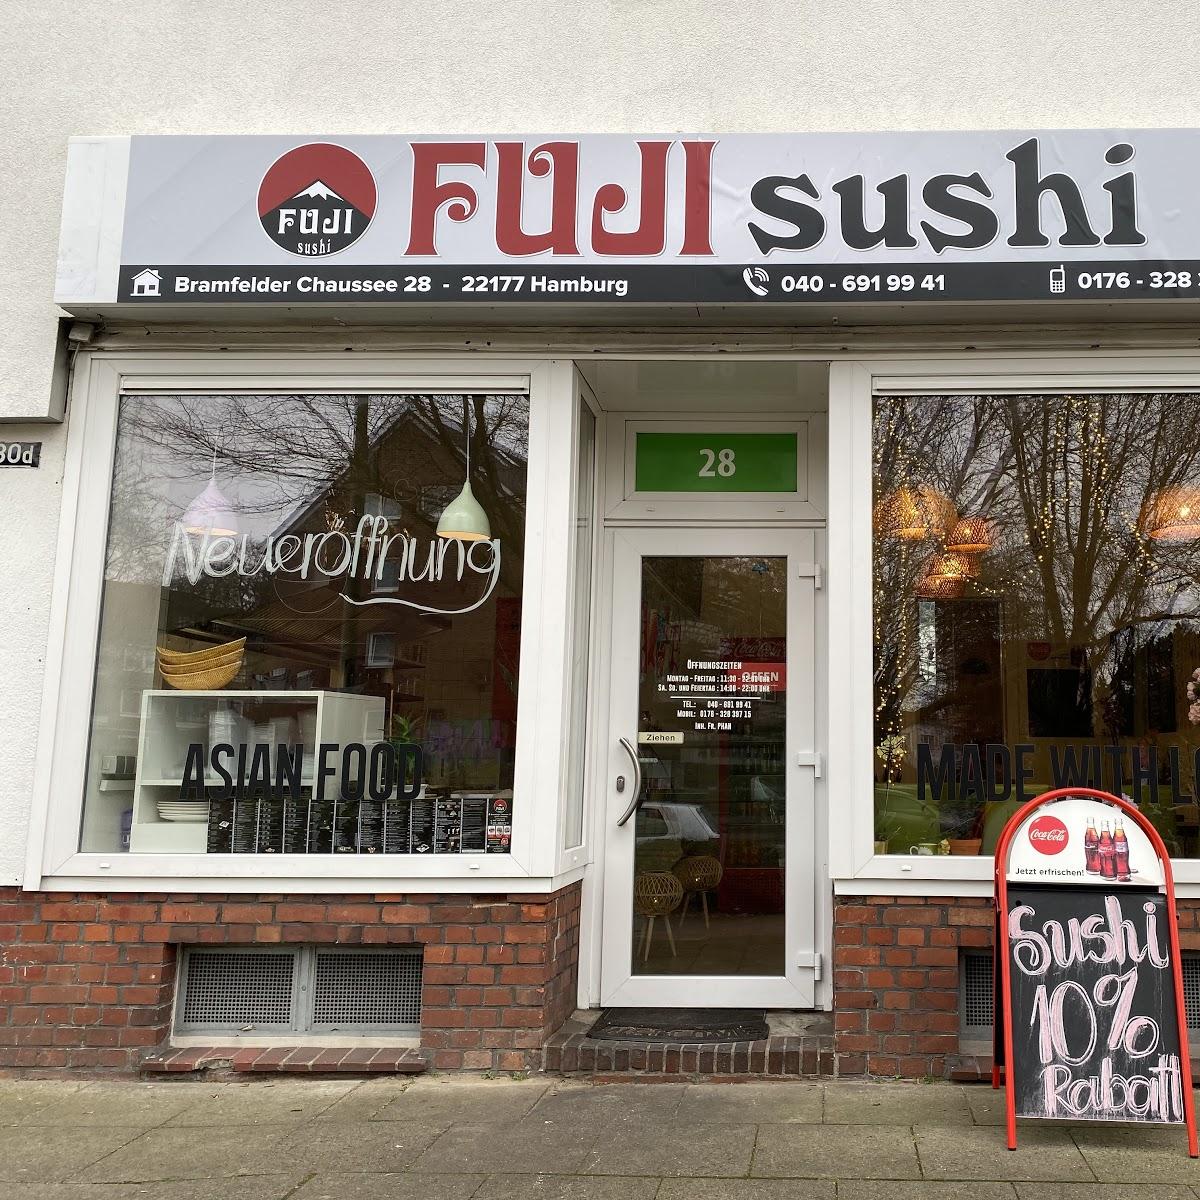 Restaurant "Fuji Sushi" in Hamburg